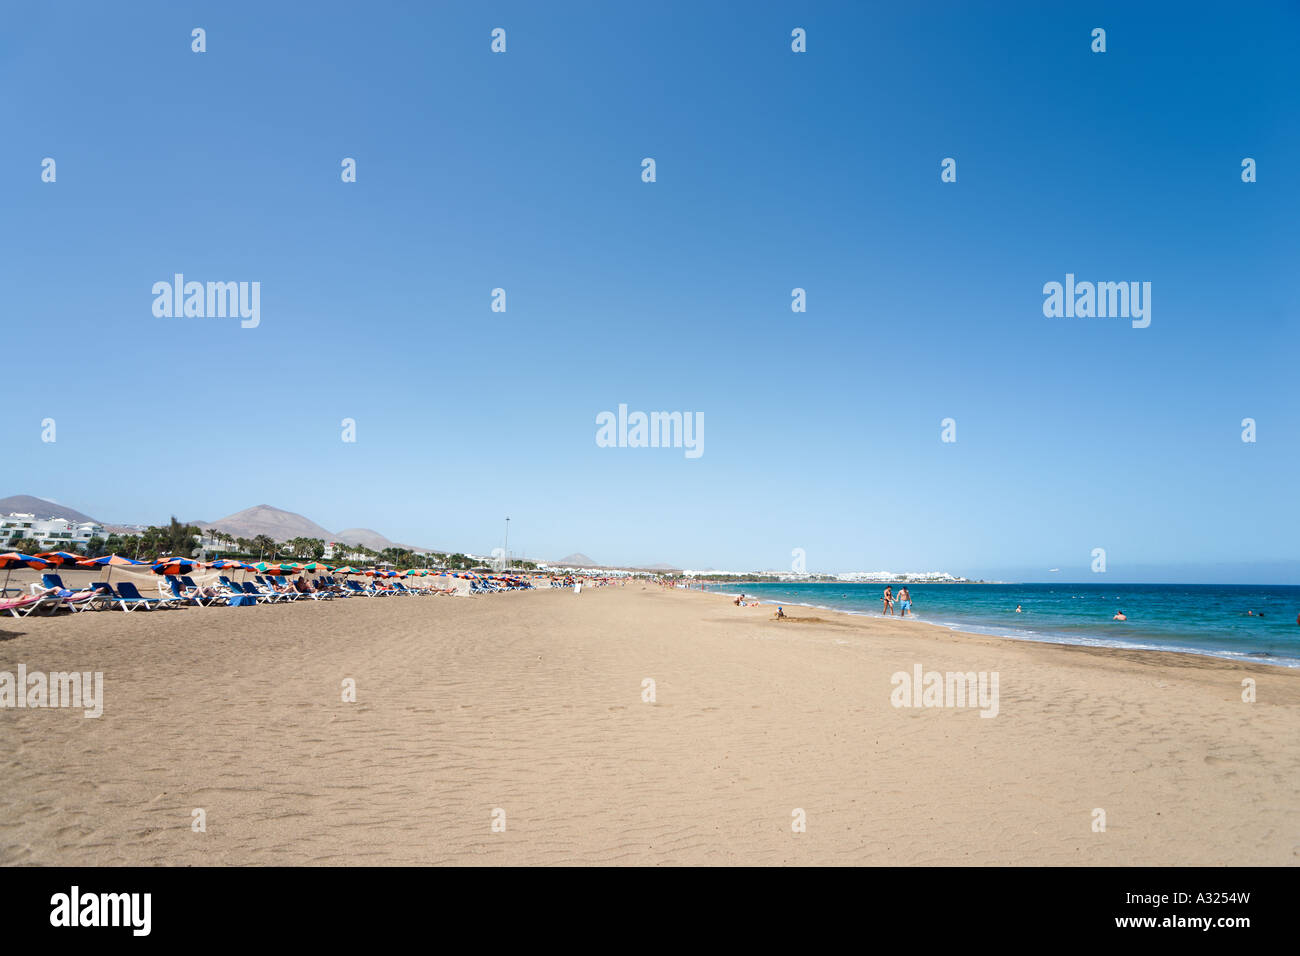 Playa de Los Pocillos, Puerto del Carmen, Lanzarote, Kanarische Inseln,  Spanien Stockfotografie - Alamy